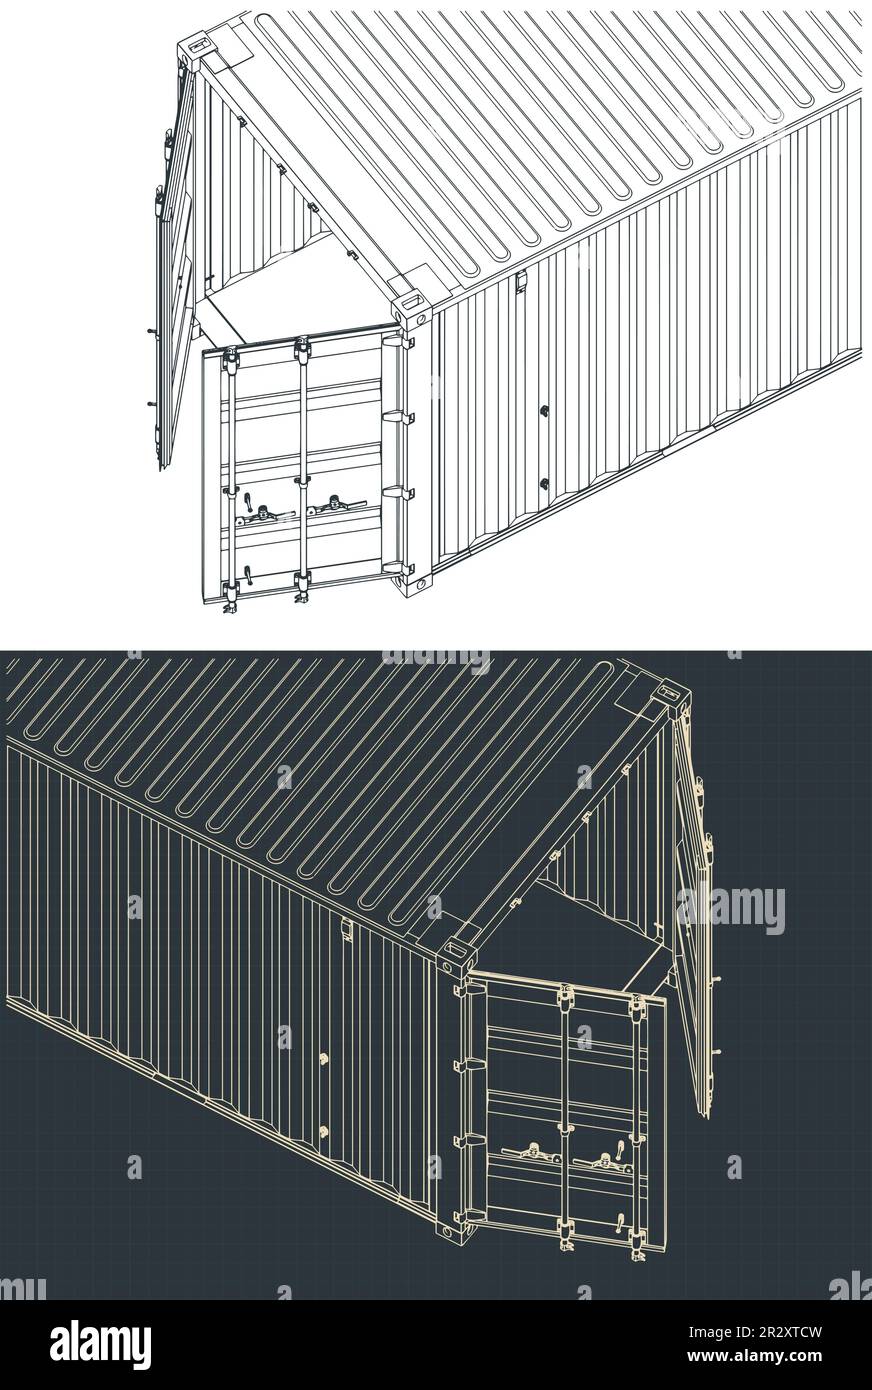 Stilisierte Vektordarstellung isometrischer Entwürfe von Nahaufnahmen von Frachtcontainern Stock Vektor